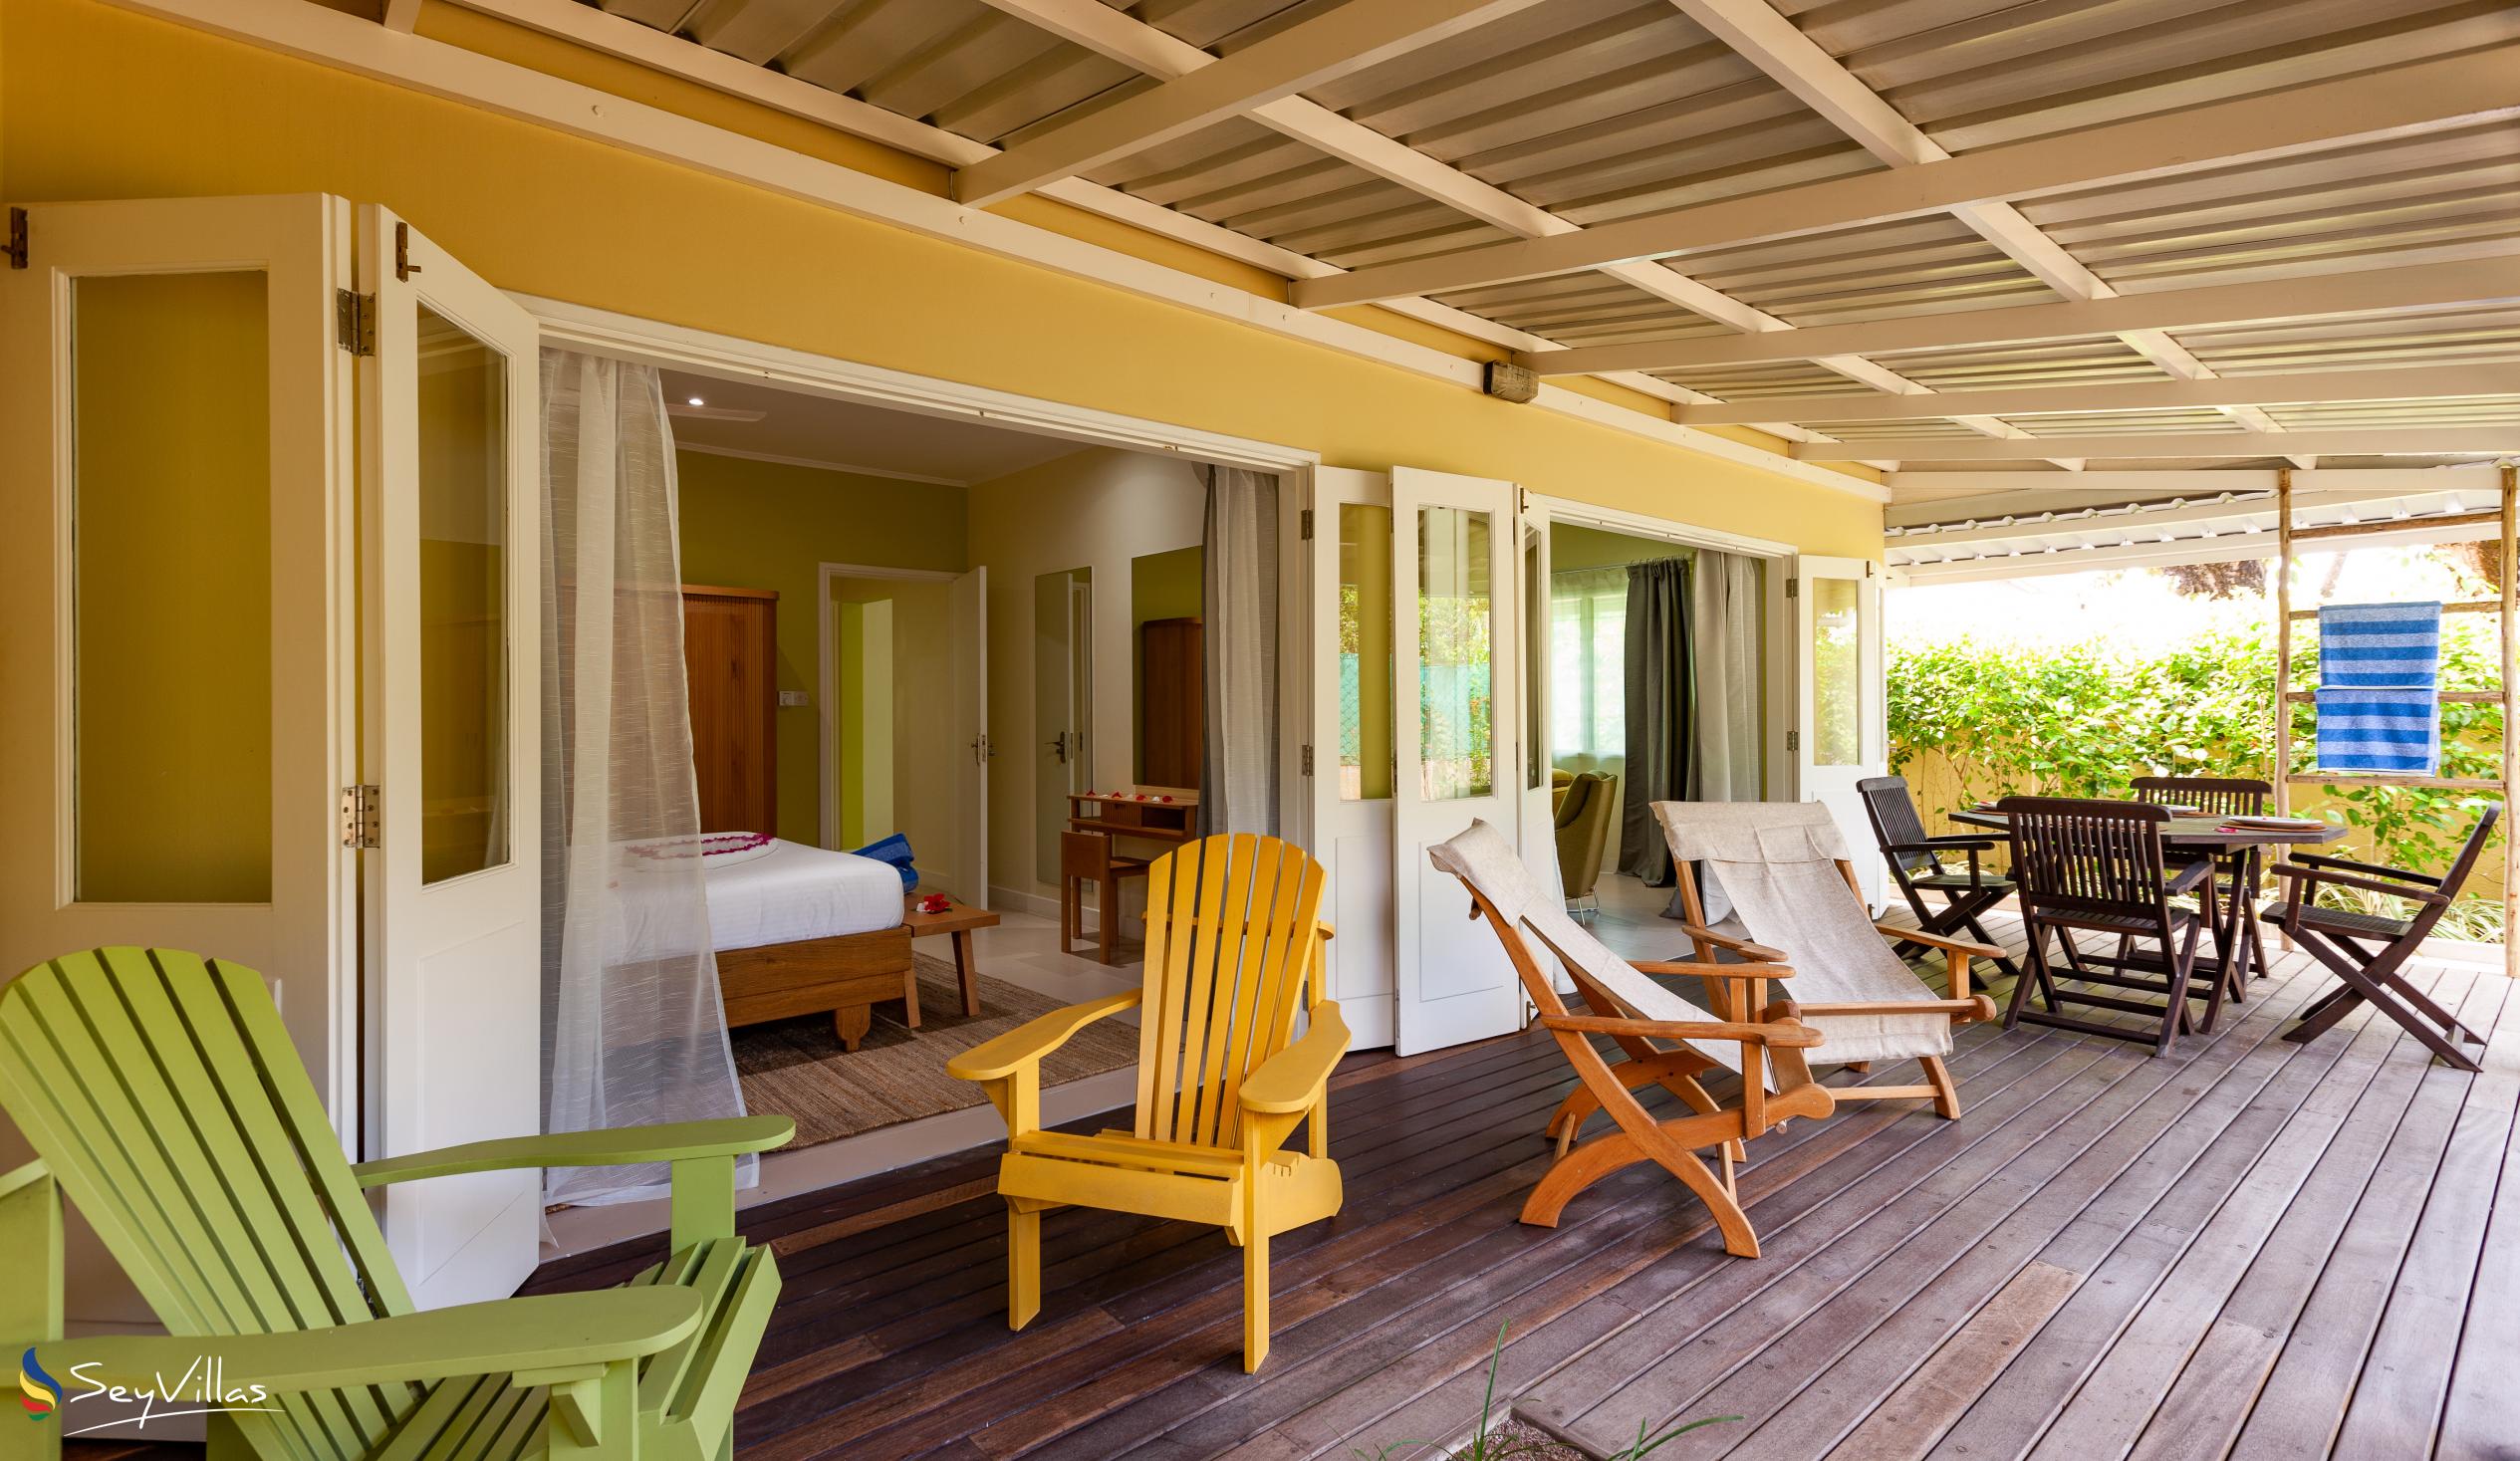 Foto 42: Residence Praslinoise - Familienappartement mit 2 Schlafzimmern (EG) - Praslin (Seychellen)